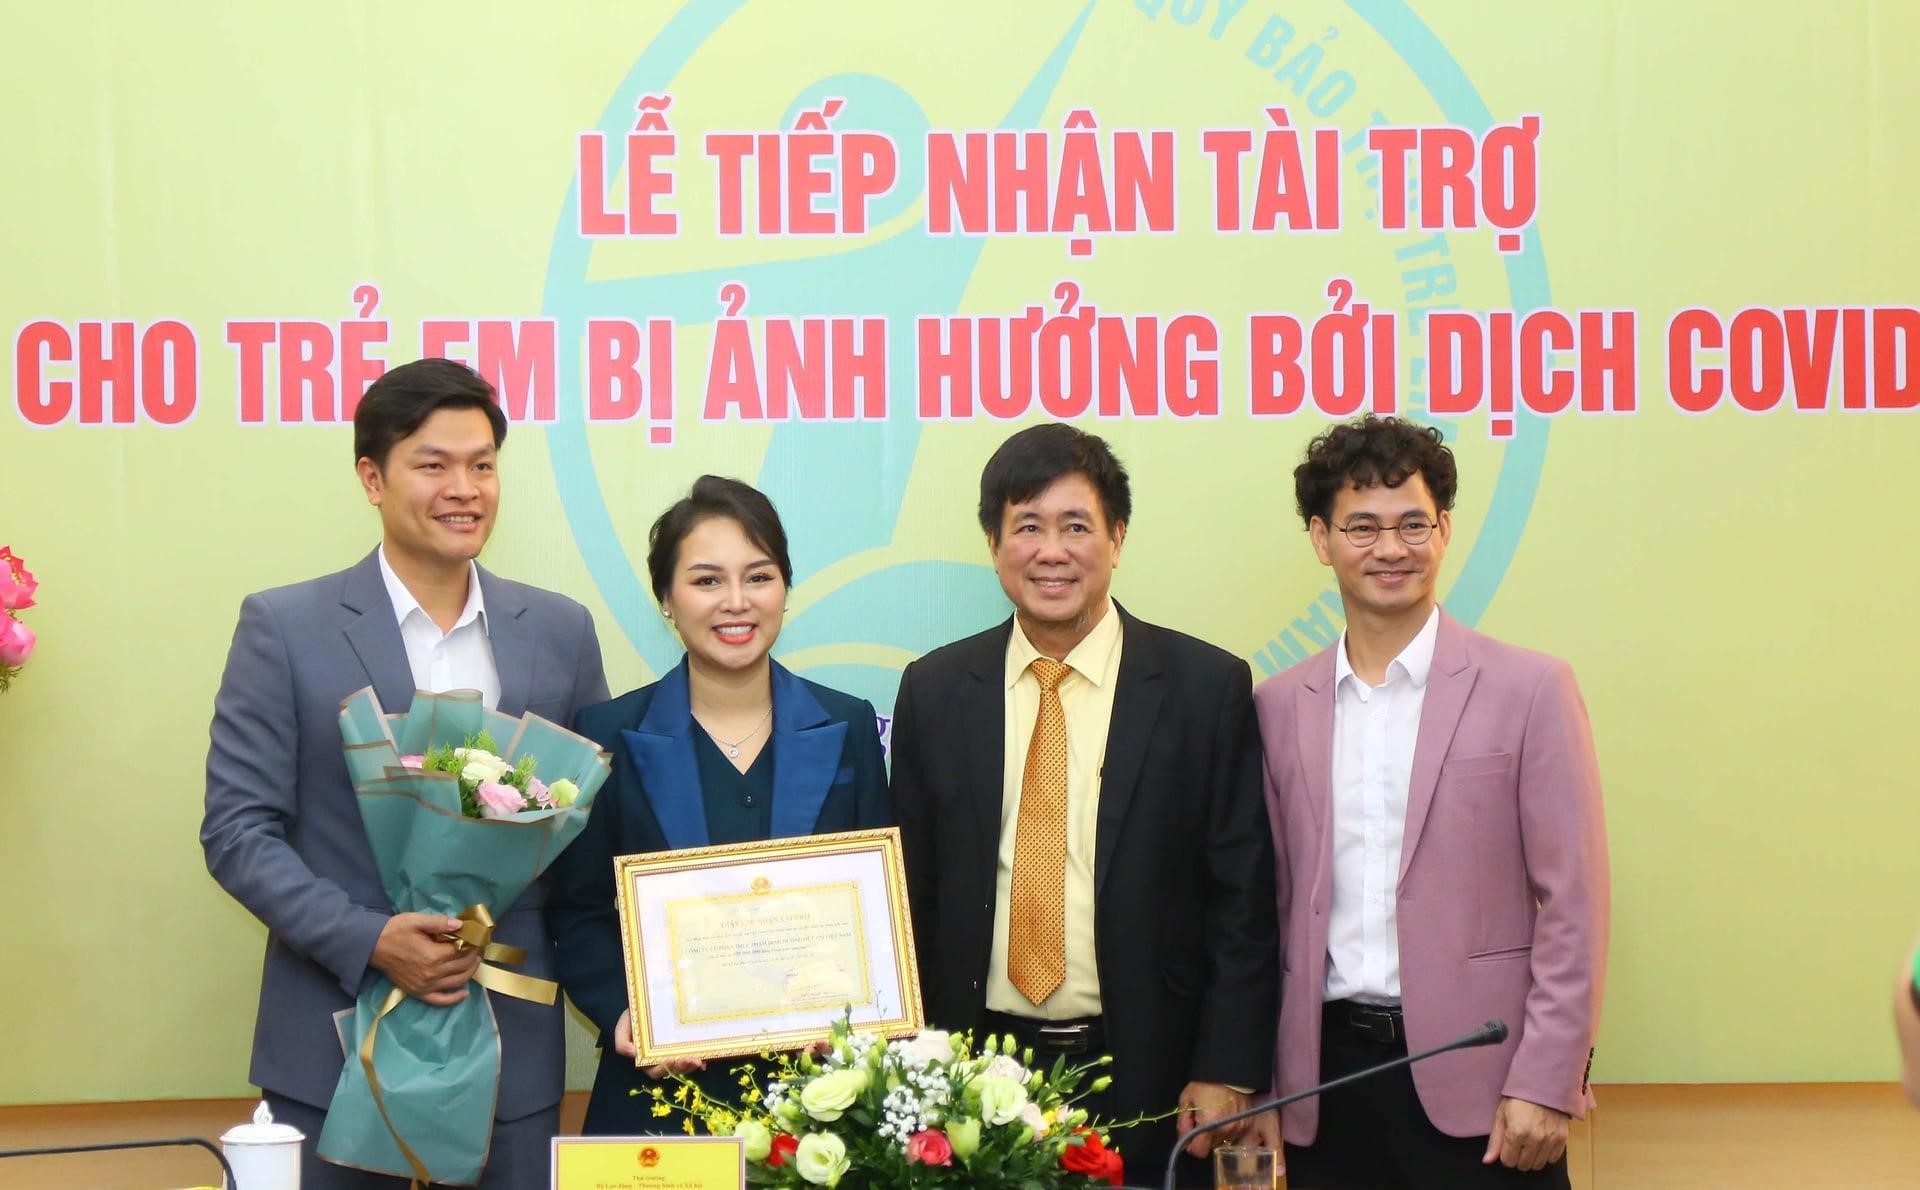  Doanh nhân Phạm Quang Trường đồng hành cùng trẻ em Việt bị ảnh hưởng bởi đại dịch Covid-19 